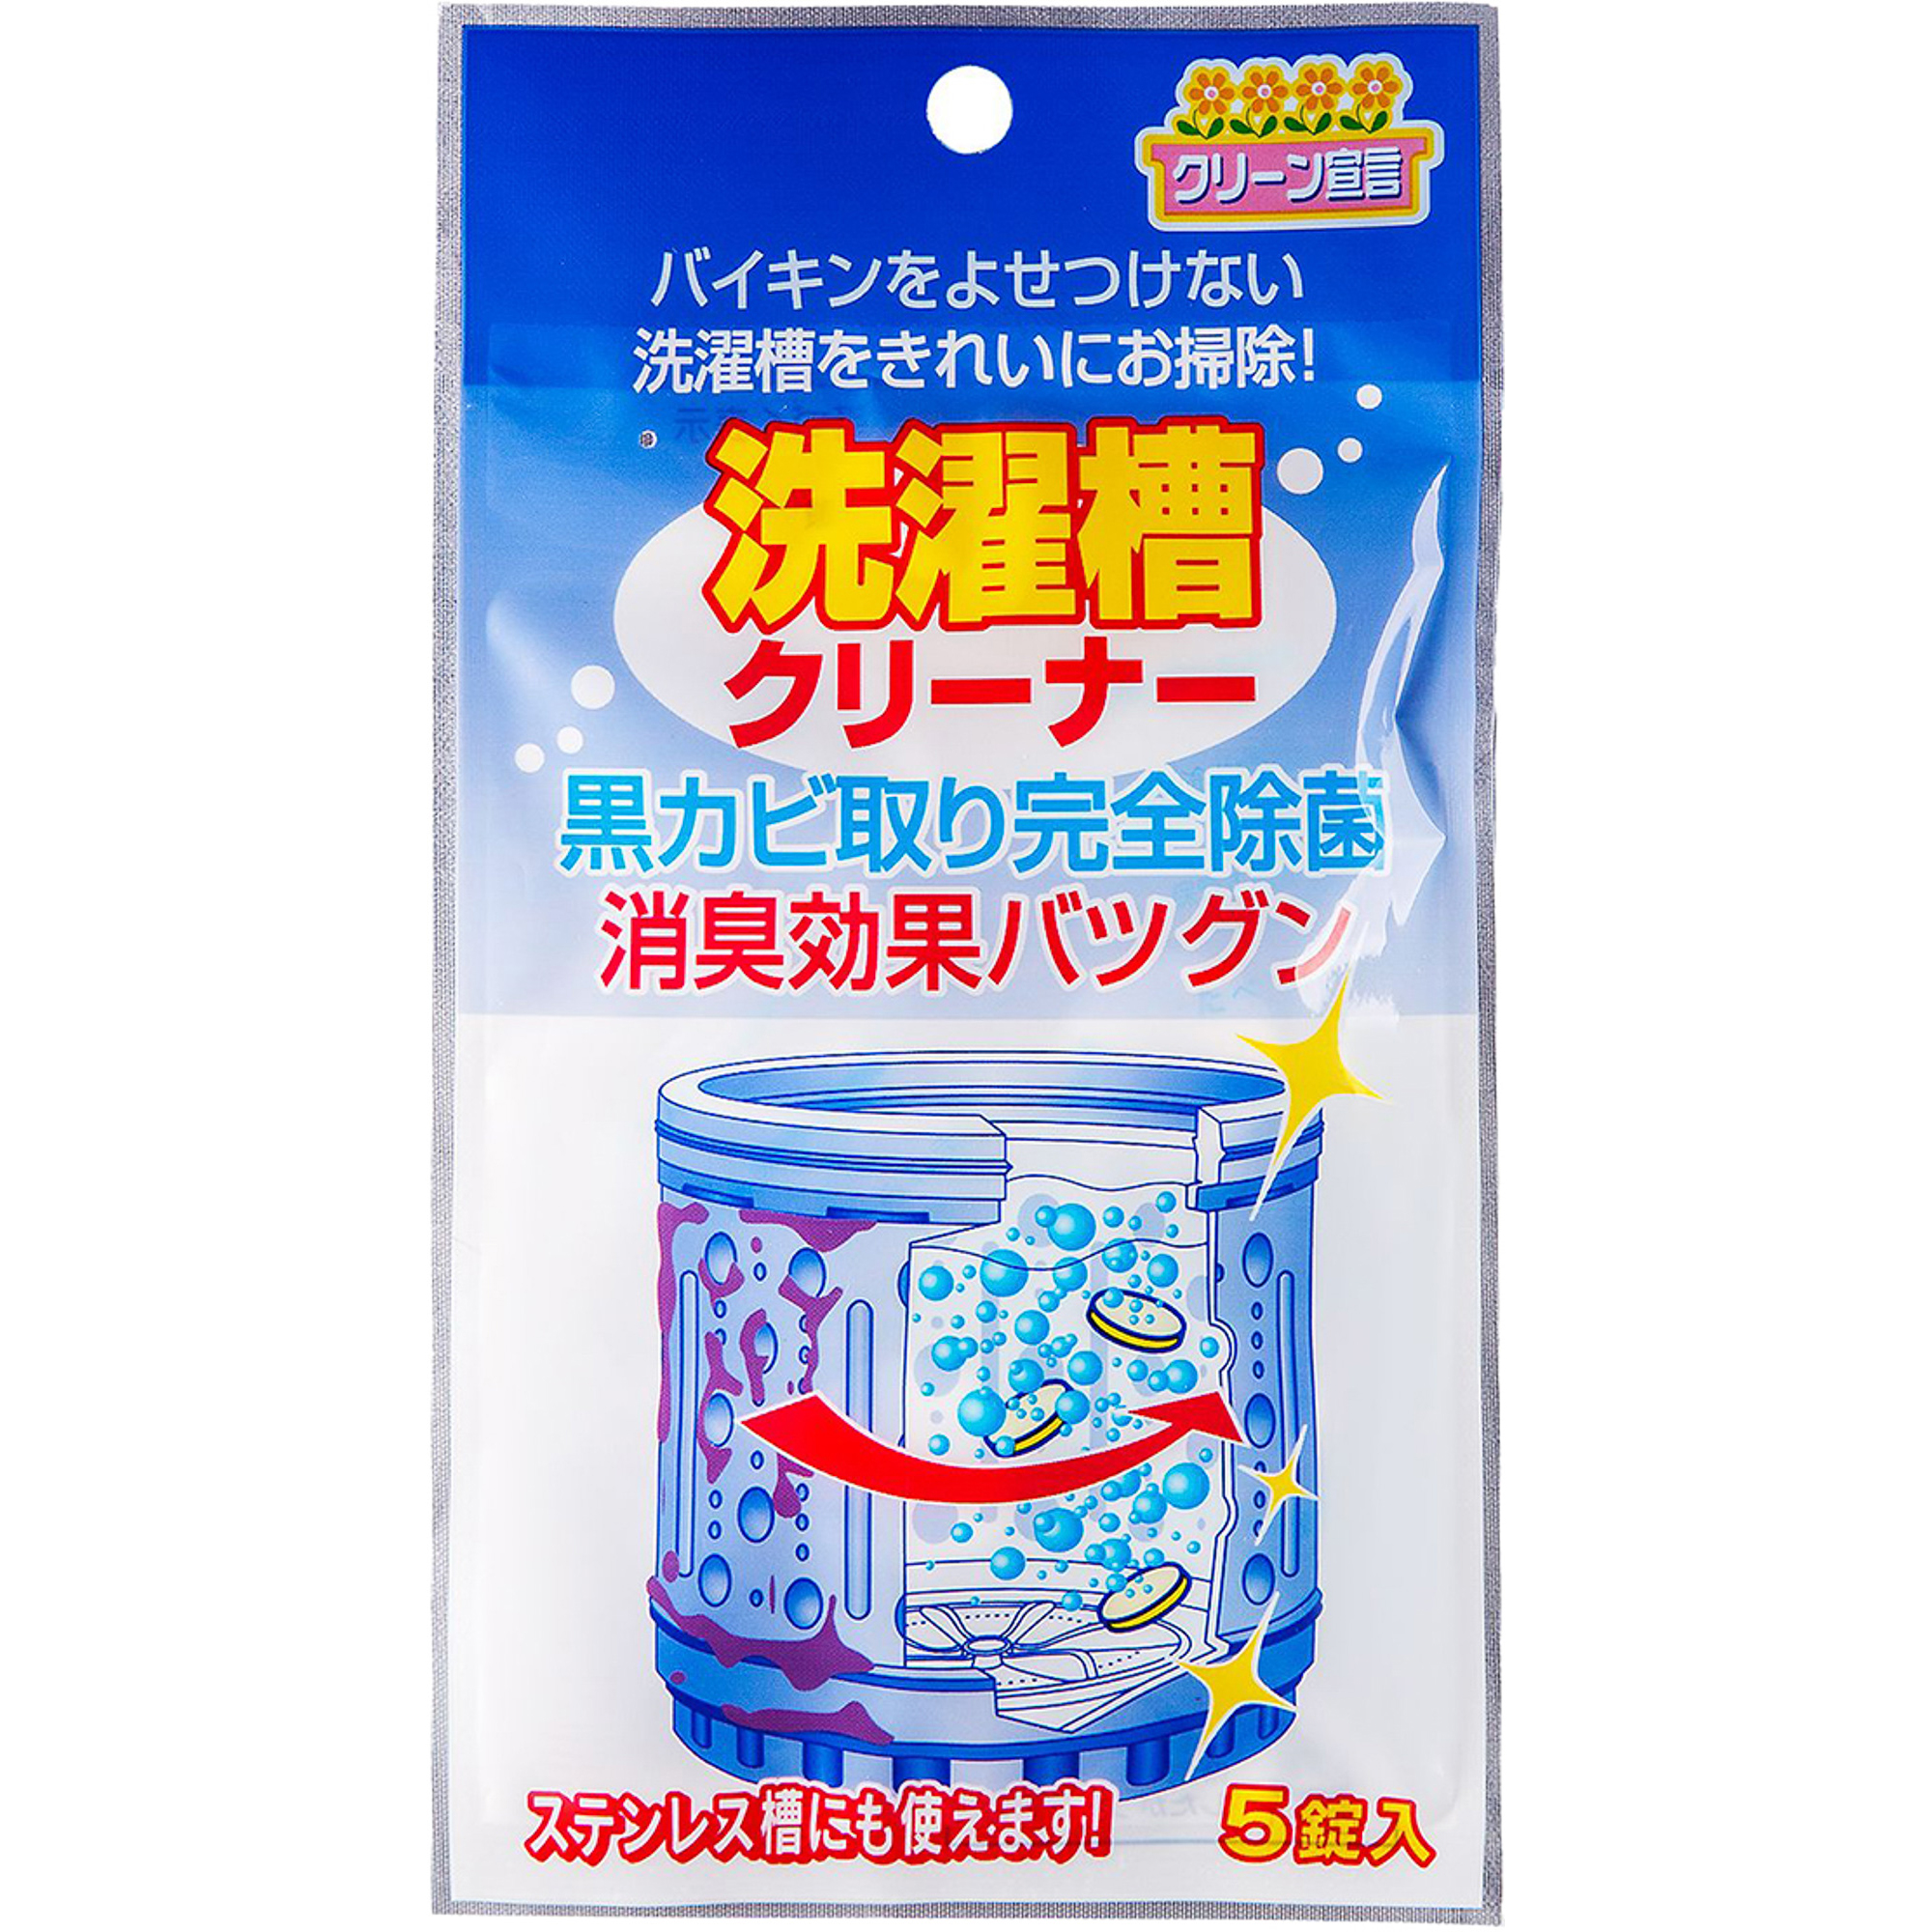 Средство Nagara Cleaning Liquid для чистки барабанов 4г x 5шт чистящее средство nagara для туалета 500 мл